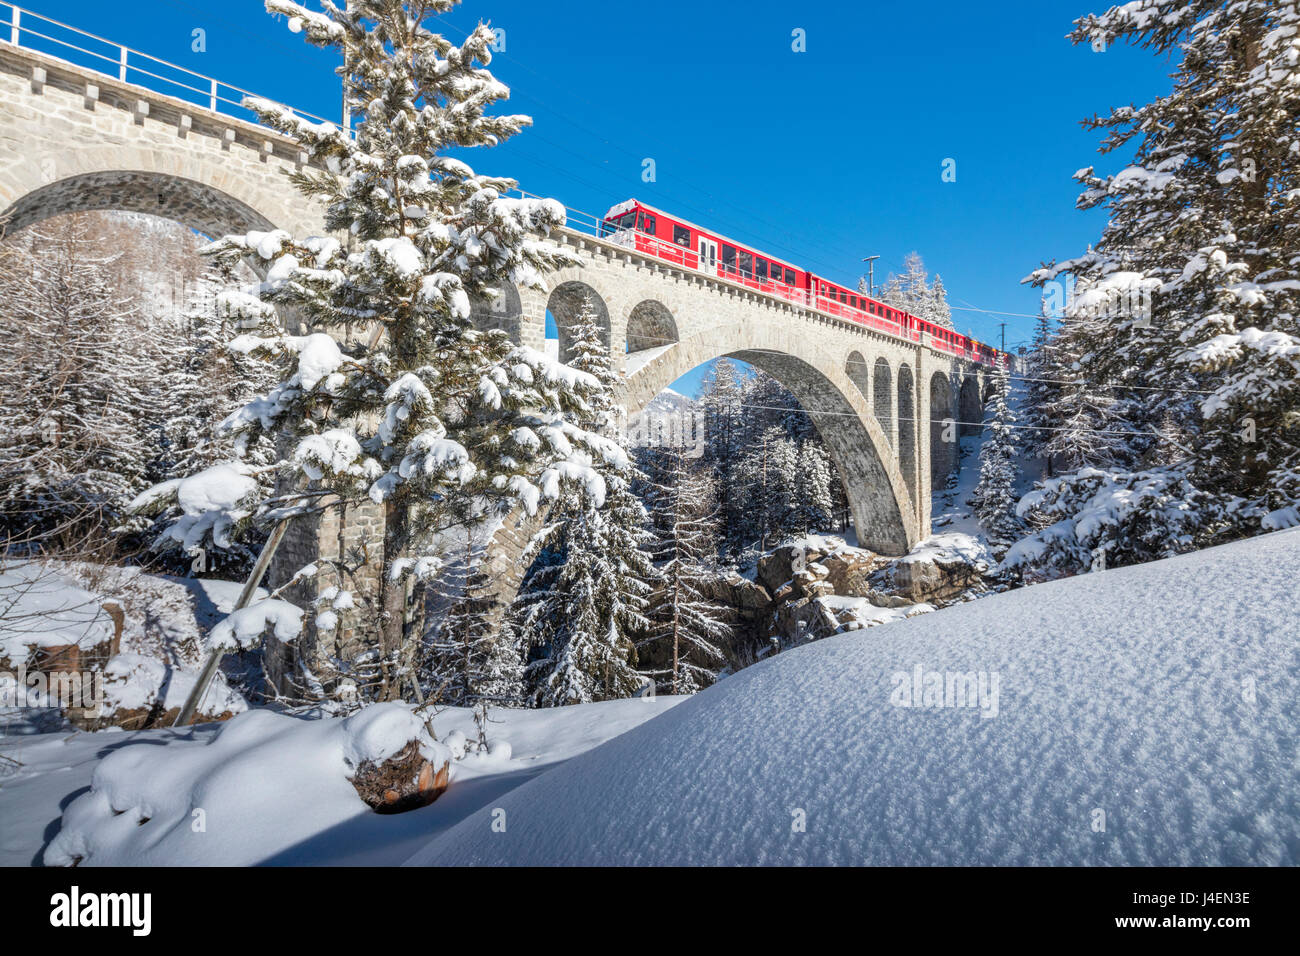 Le train rouge sur viaduc entouré par Snowy Woods, Cinuos-Chel, Canton des Grisons, Engadine, Suisse, Europe Banque D'Images